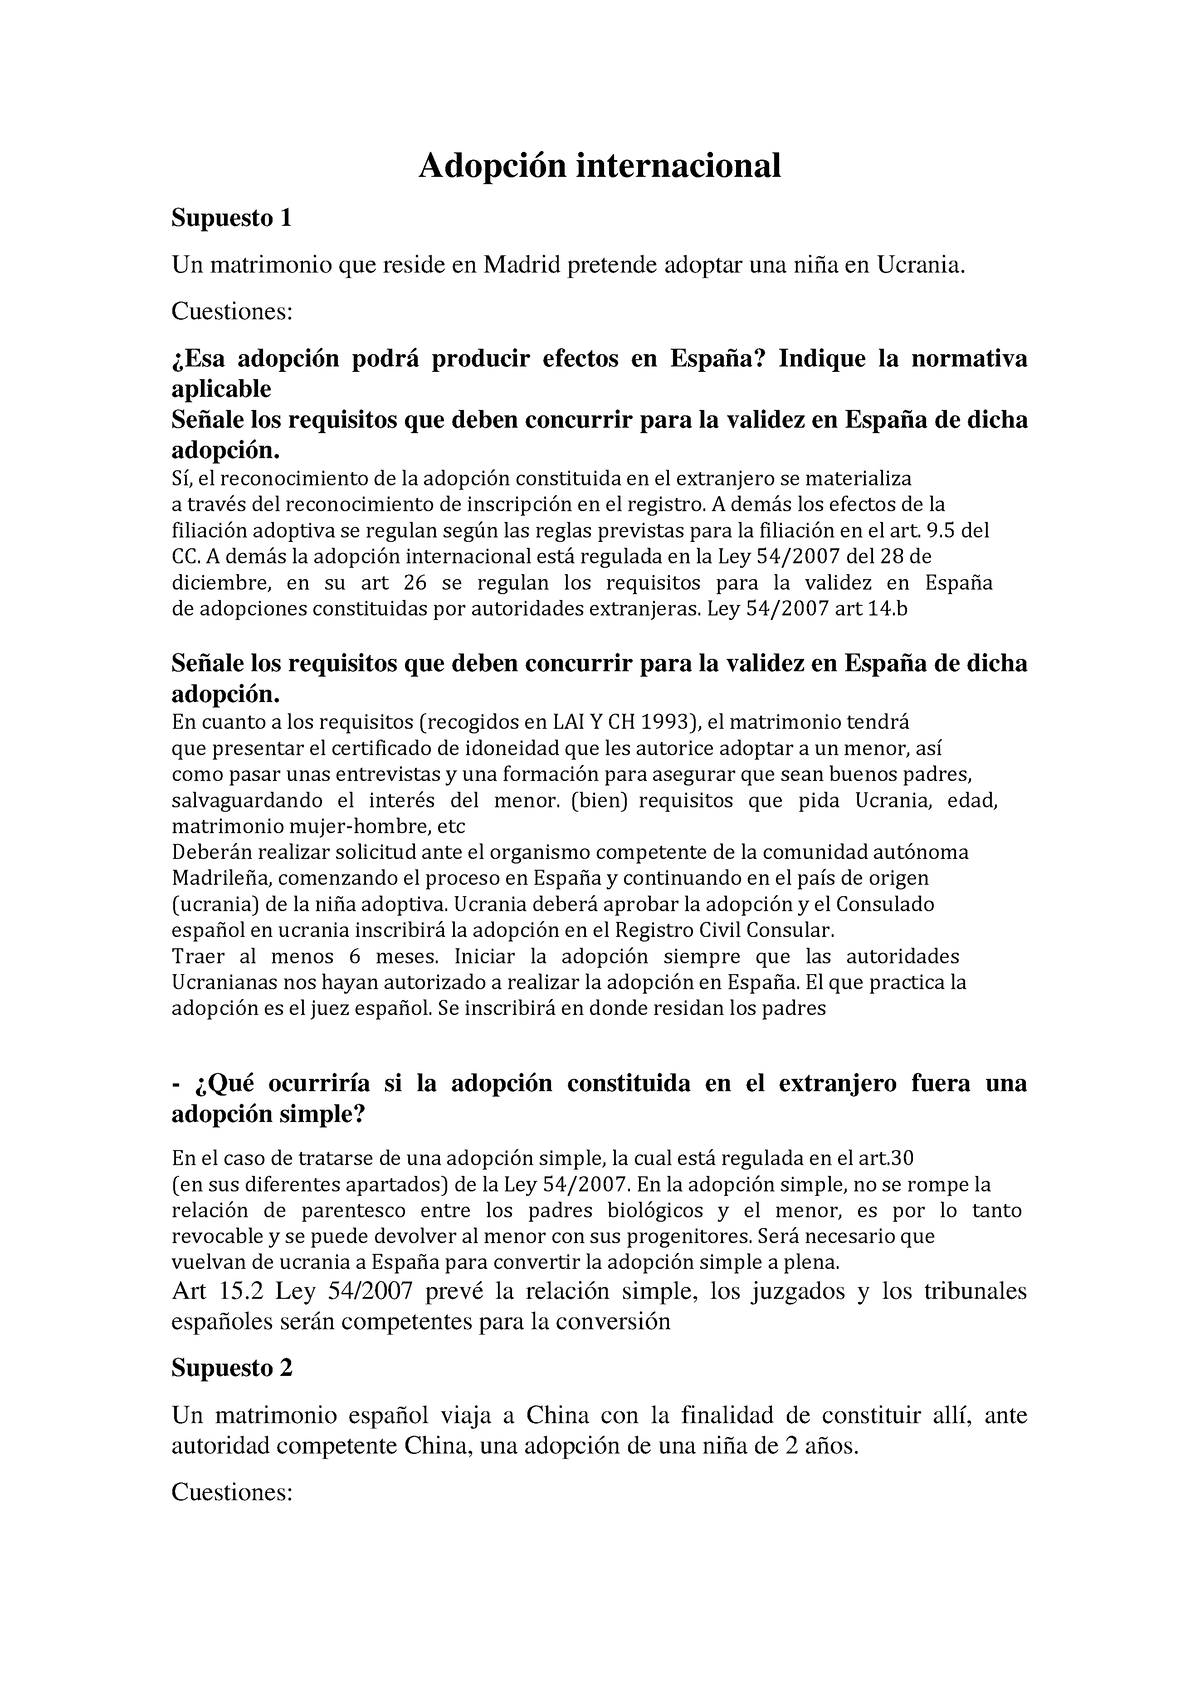 Casos Prácticos Adopcion Adopción Internacional Supuesto 1 Un Matrimonio Que Reside En Madrid 6314